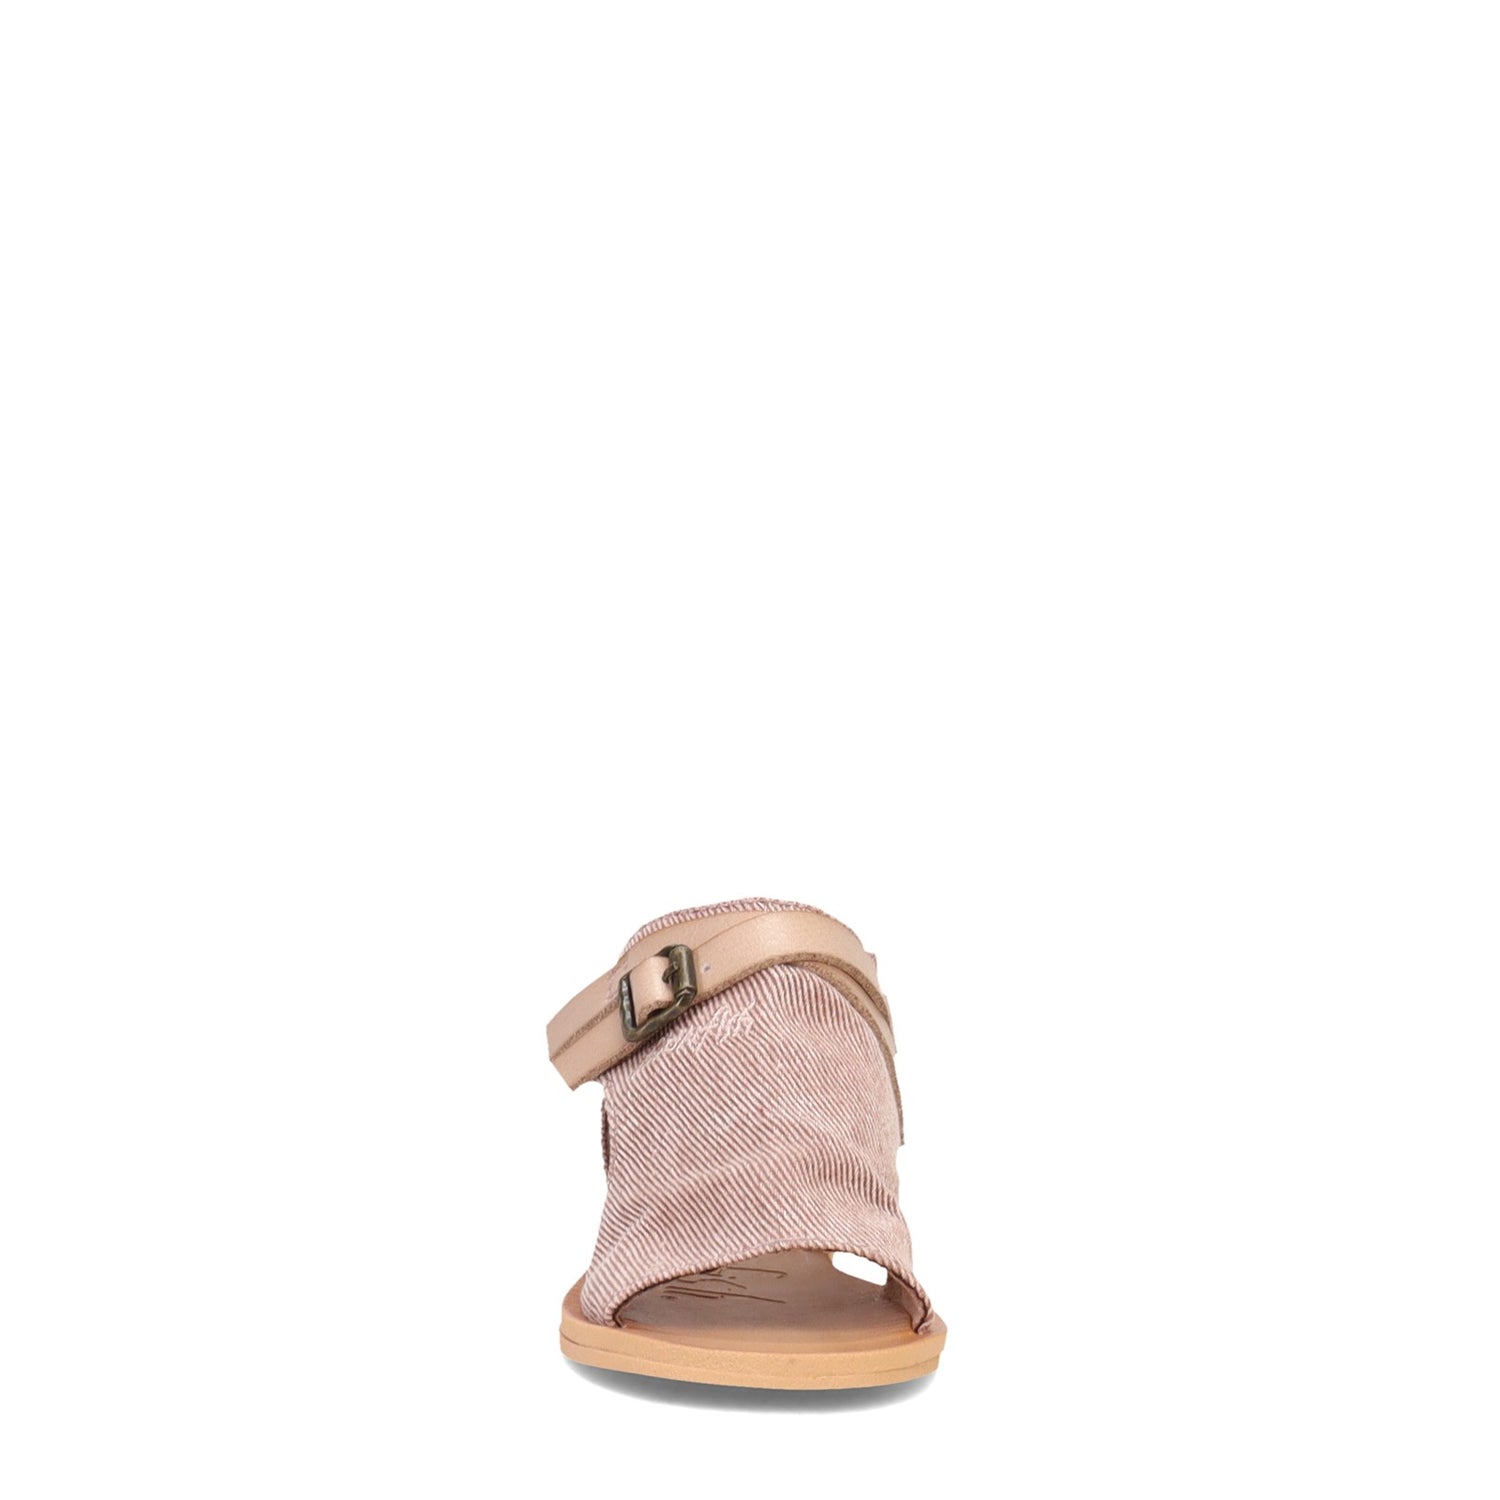 Peltz Shoes  Girl's Blowfish Malibu Defise Sandal - Toddler & Little Kid WHITE MULTI BF-7140T 940